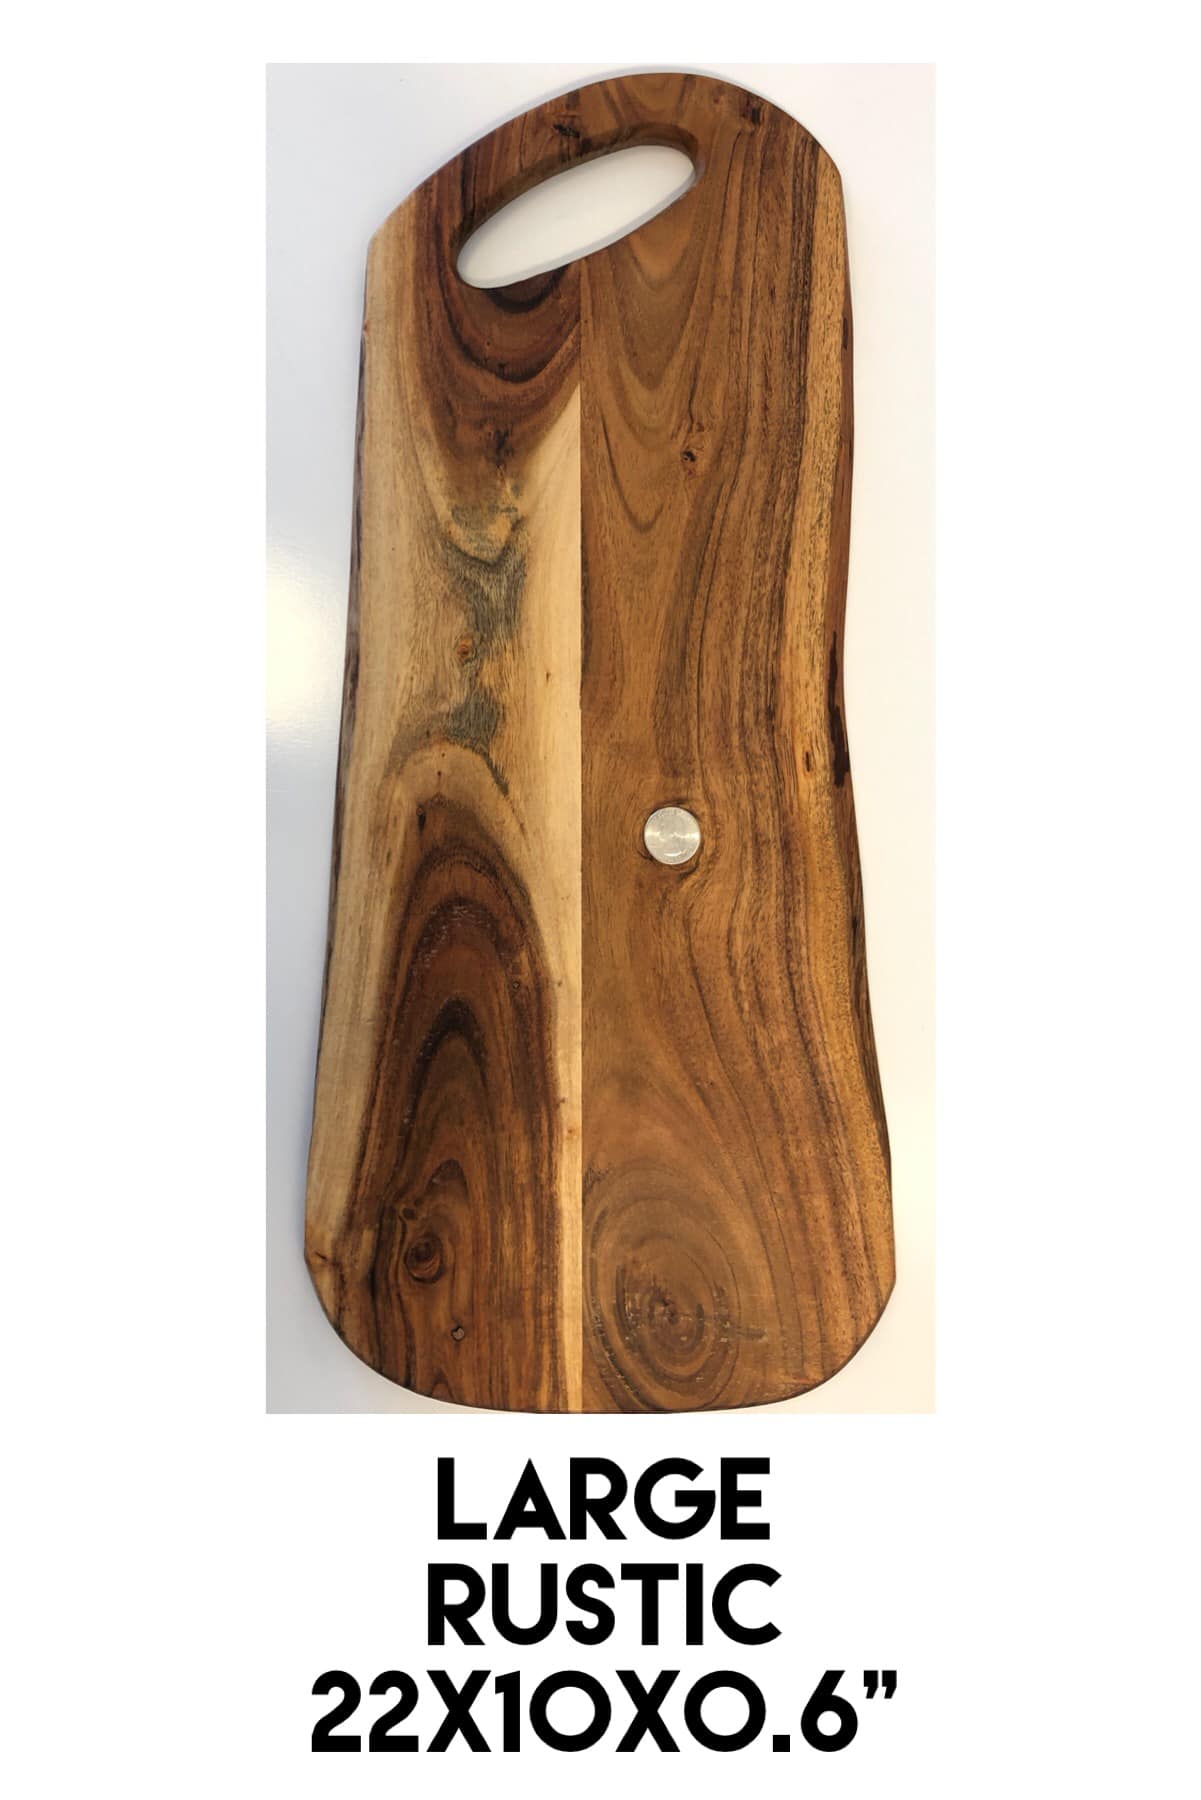 Single Large Rustic Live Edge Acacia Board - Pennsylvania